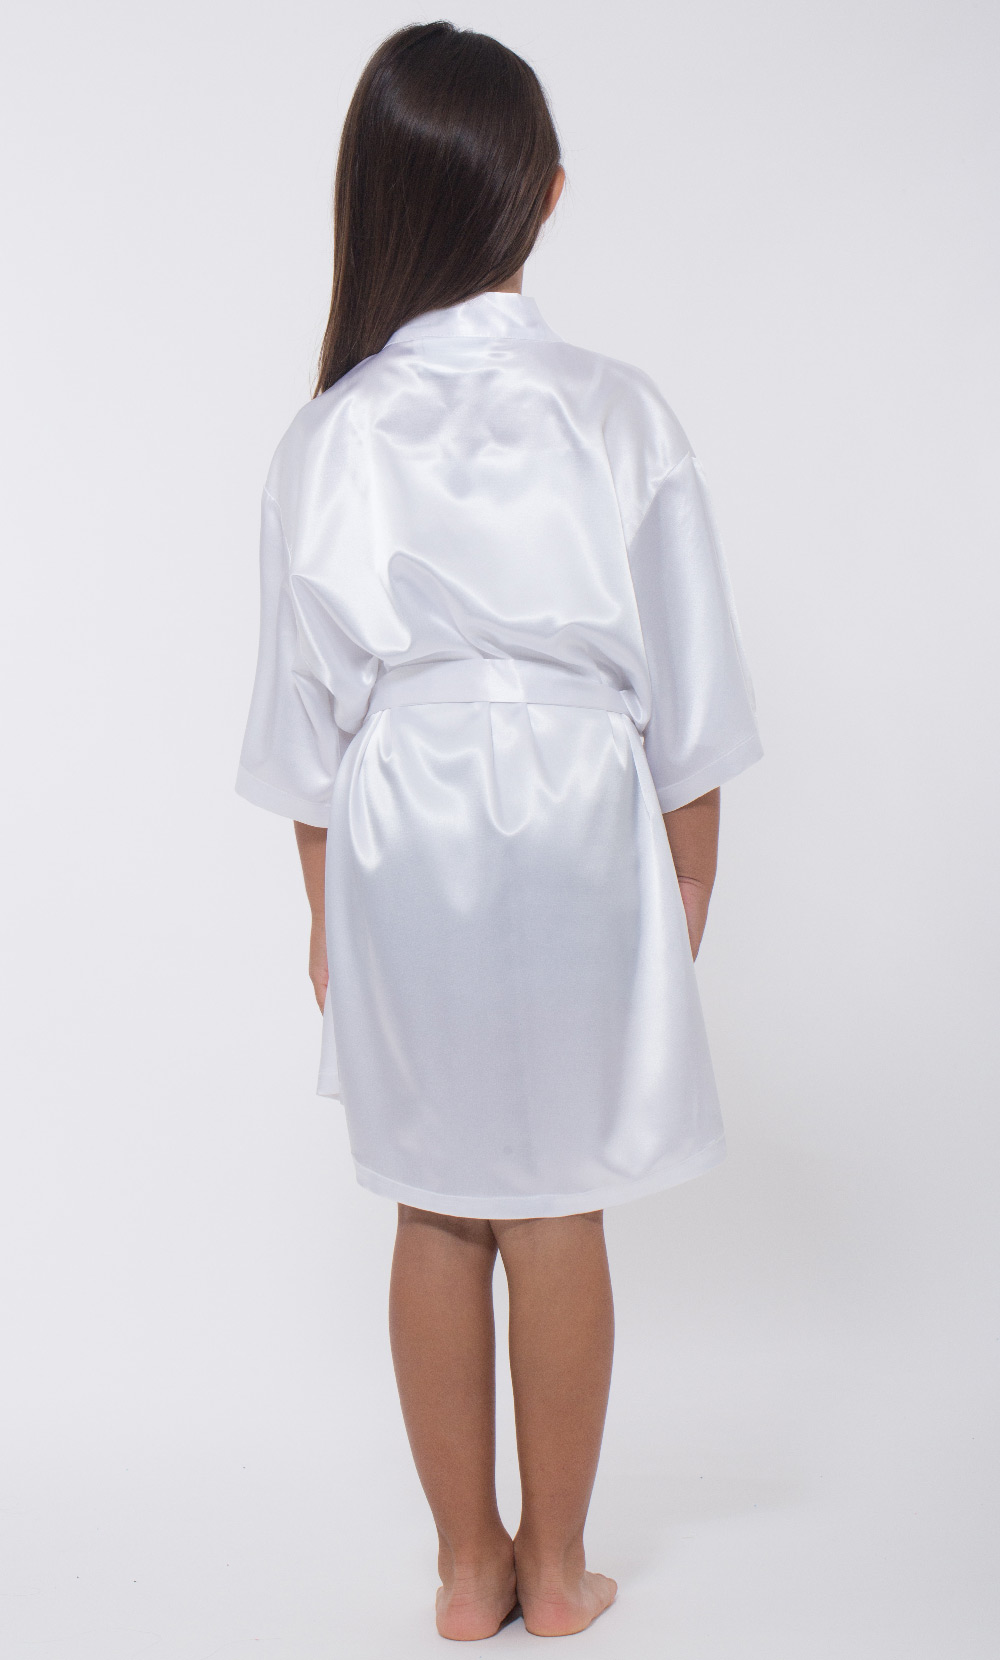 White Satin Kimono Kid's Robe-Robemart.com